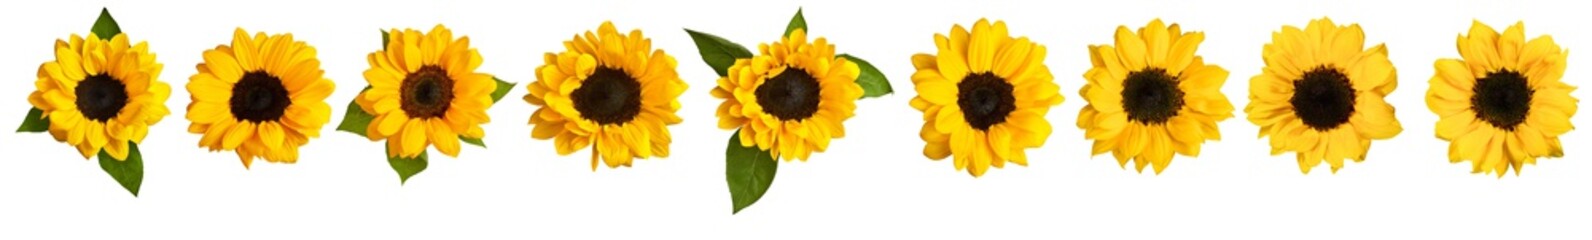 Naklejka premium Set of photos of shiny yellow sunflowers, isolated on white